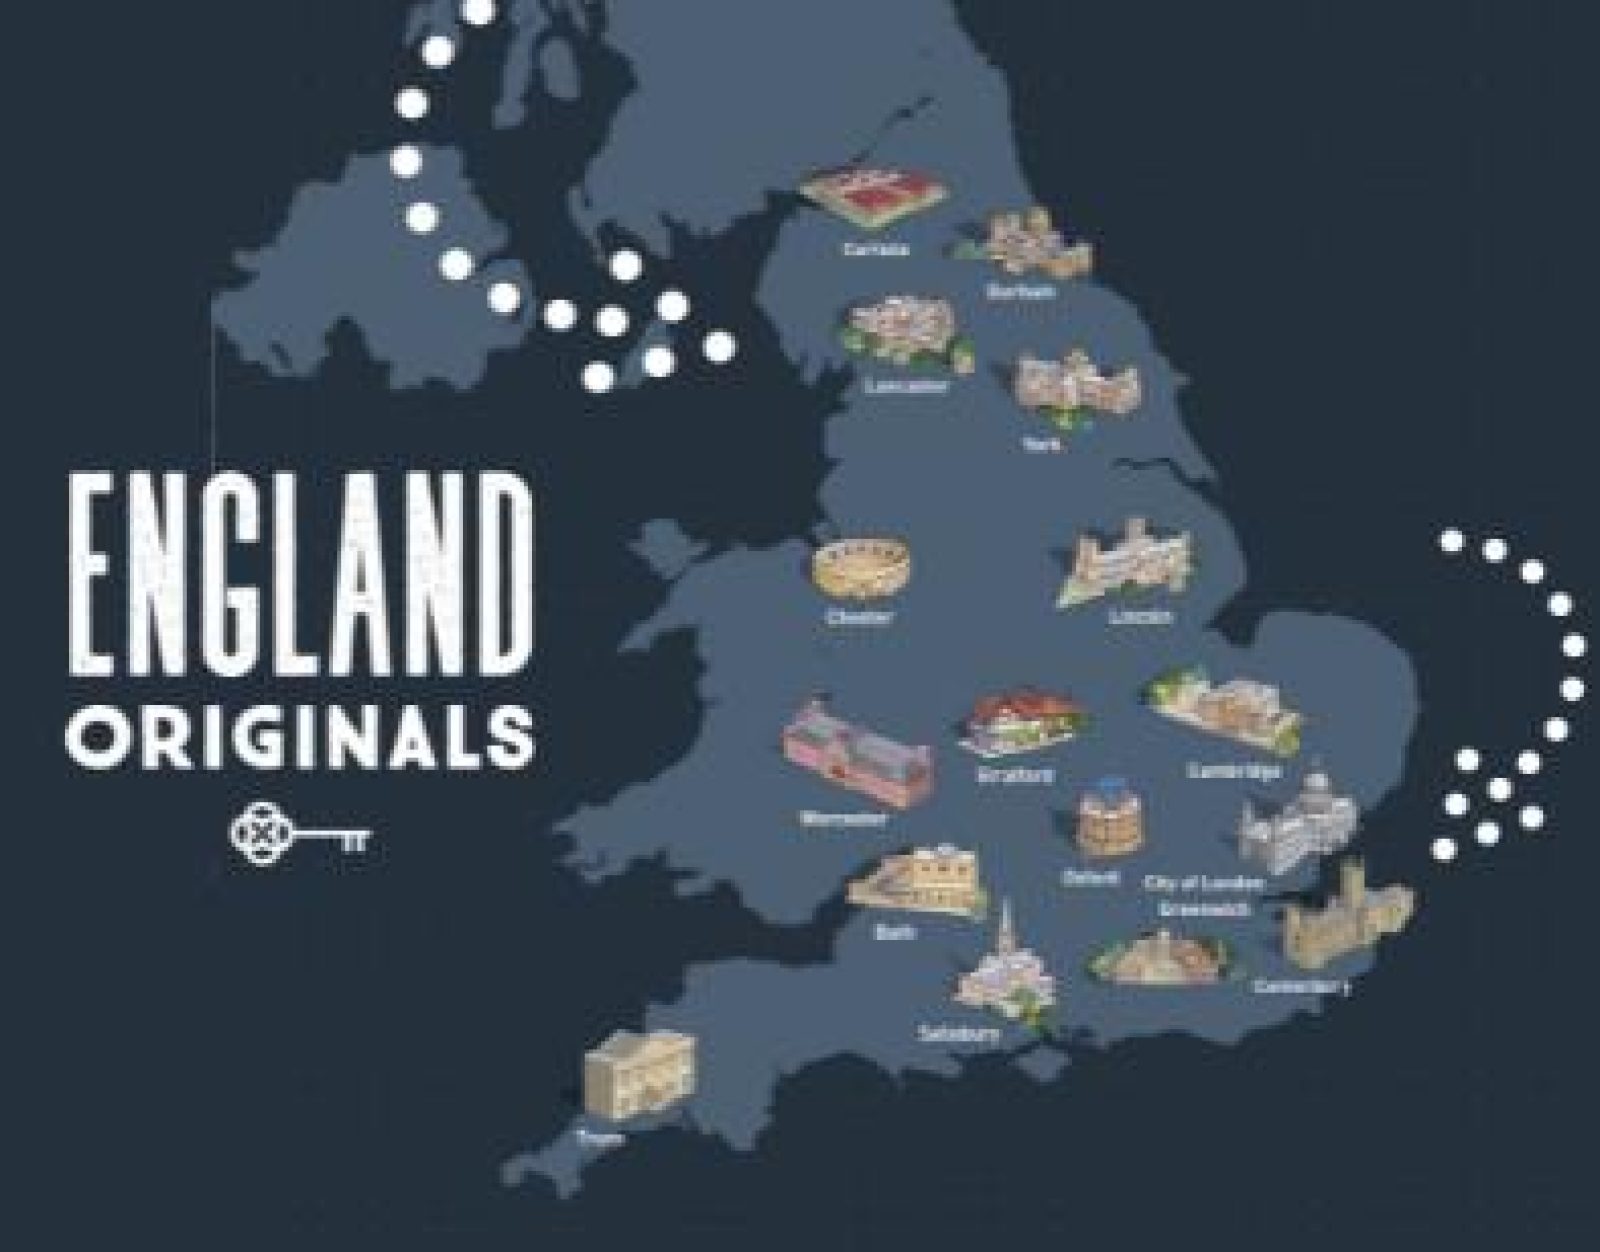 Discover England Originals